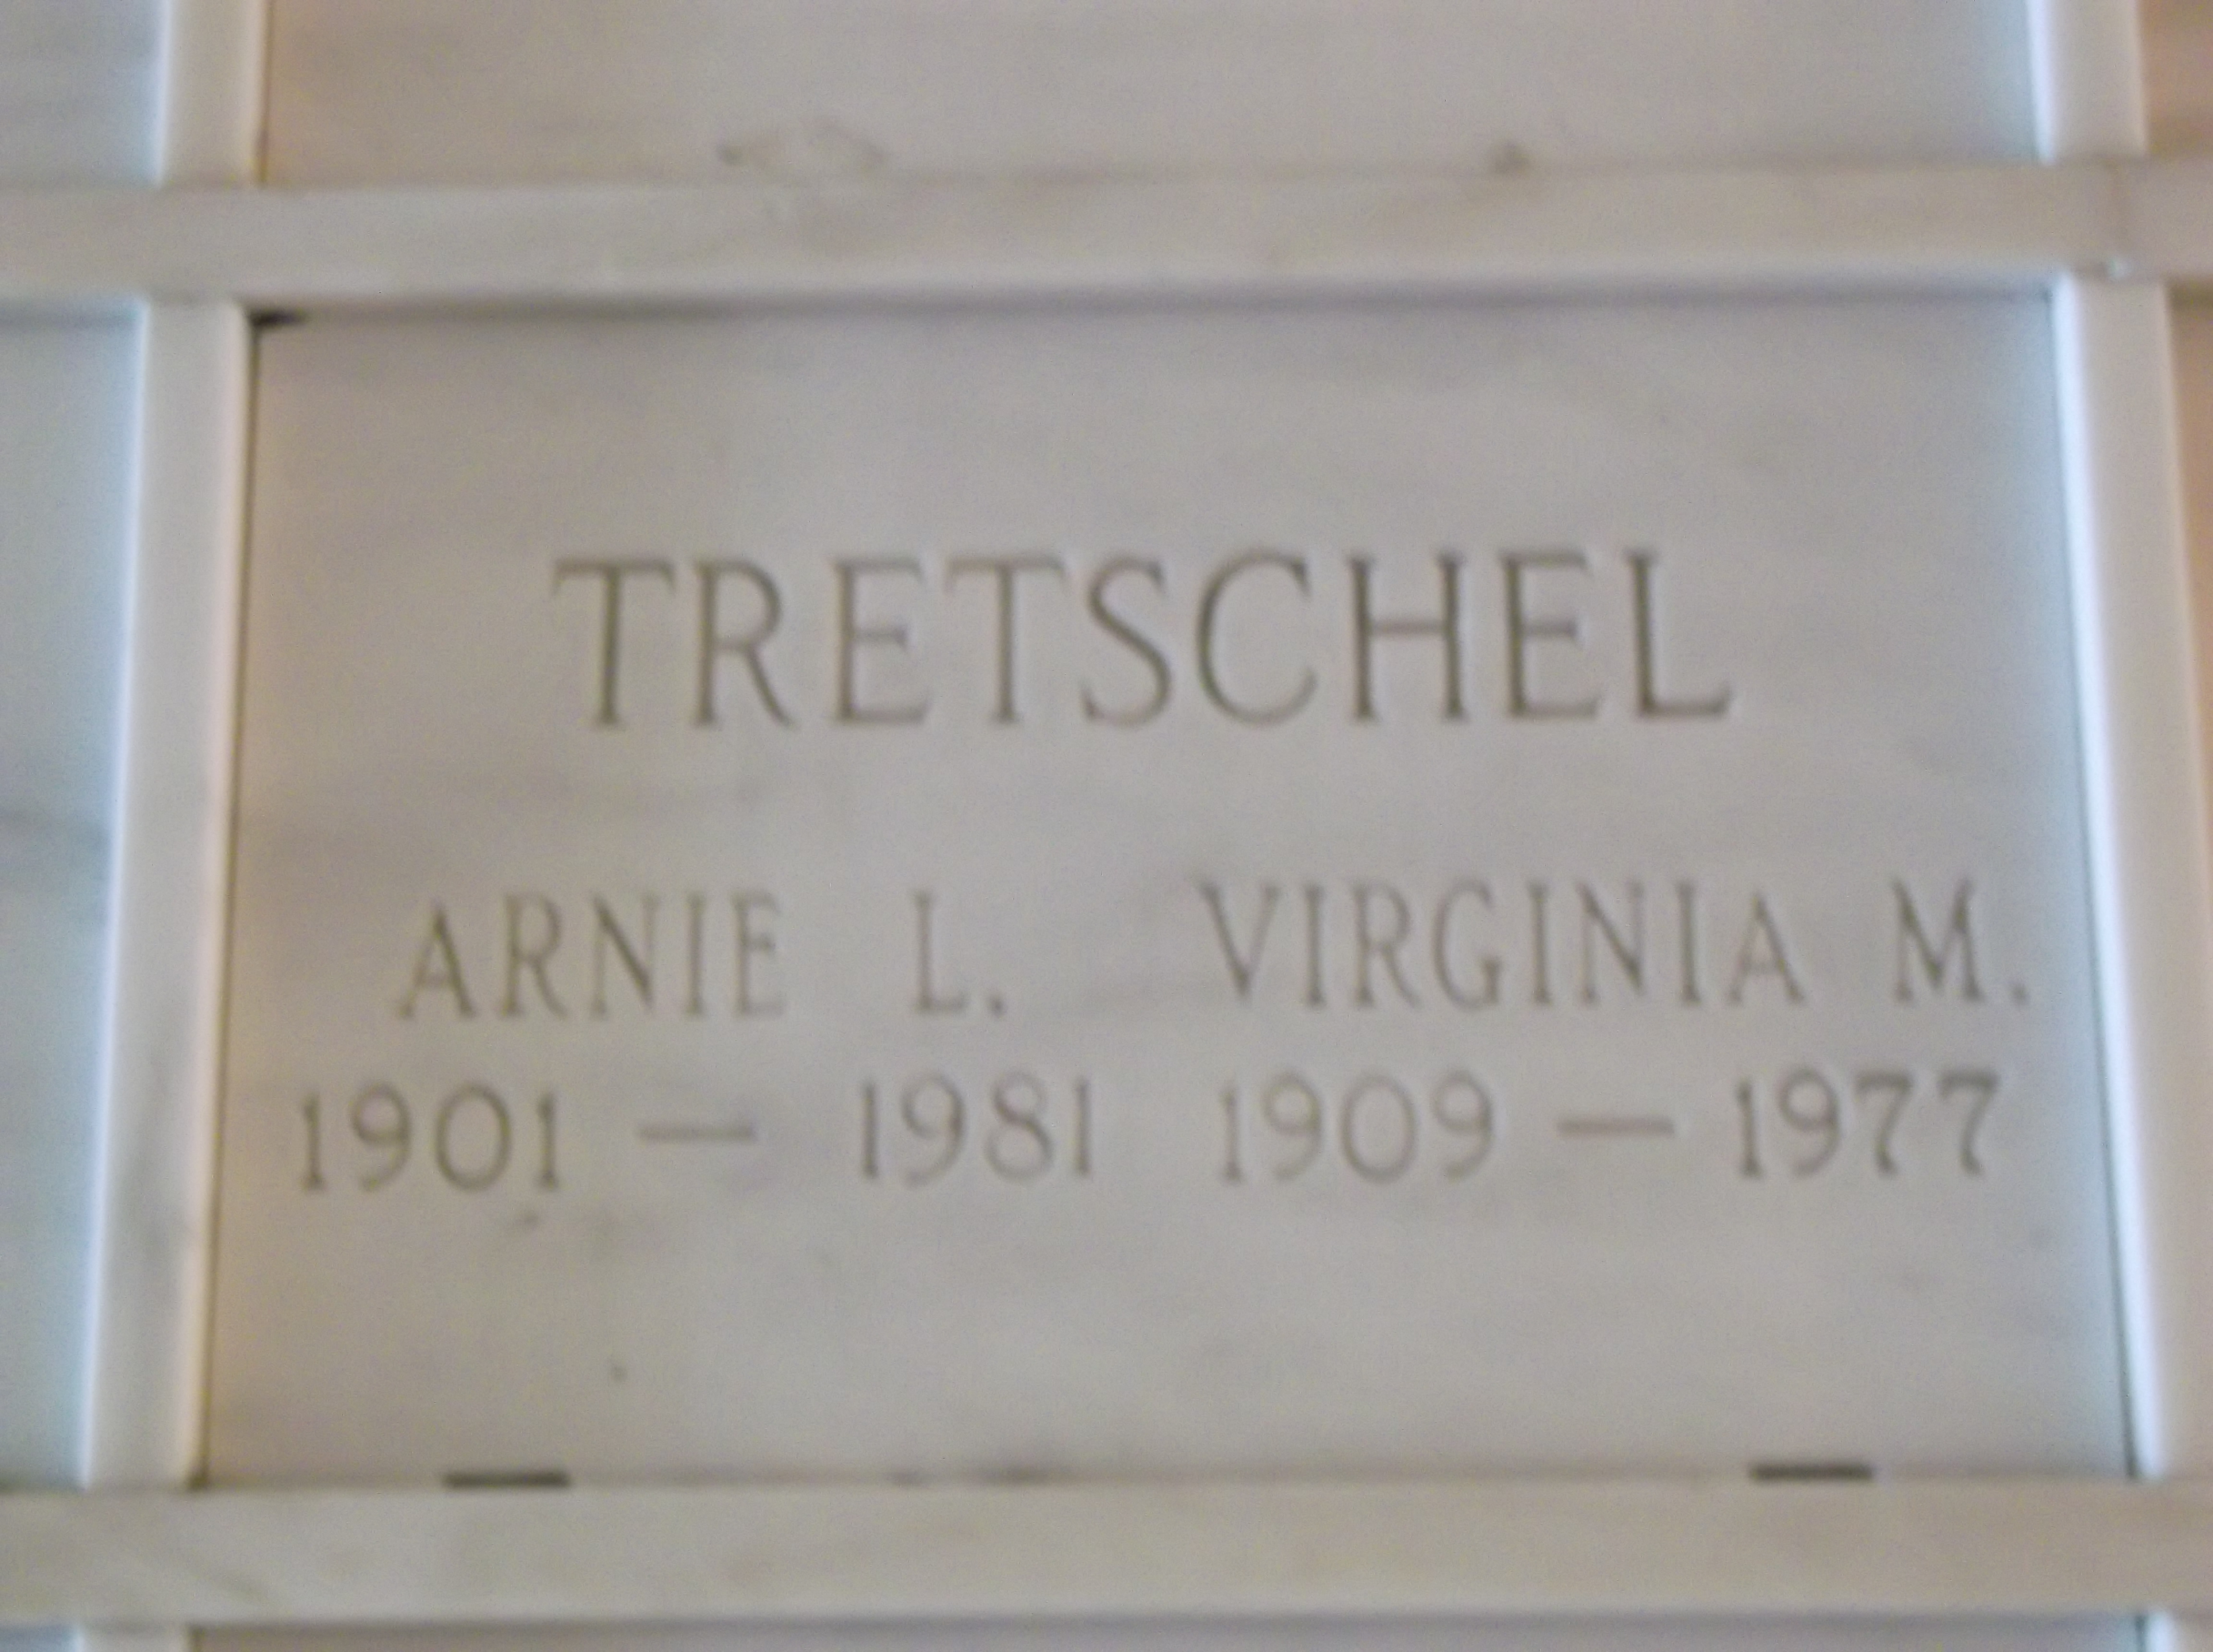 Virginia M Tretschel